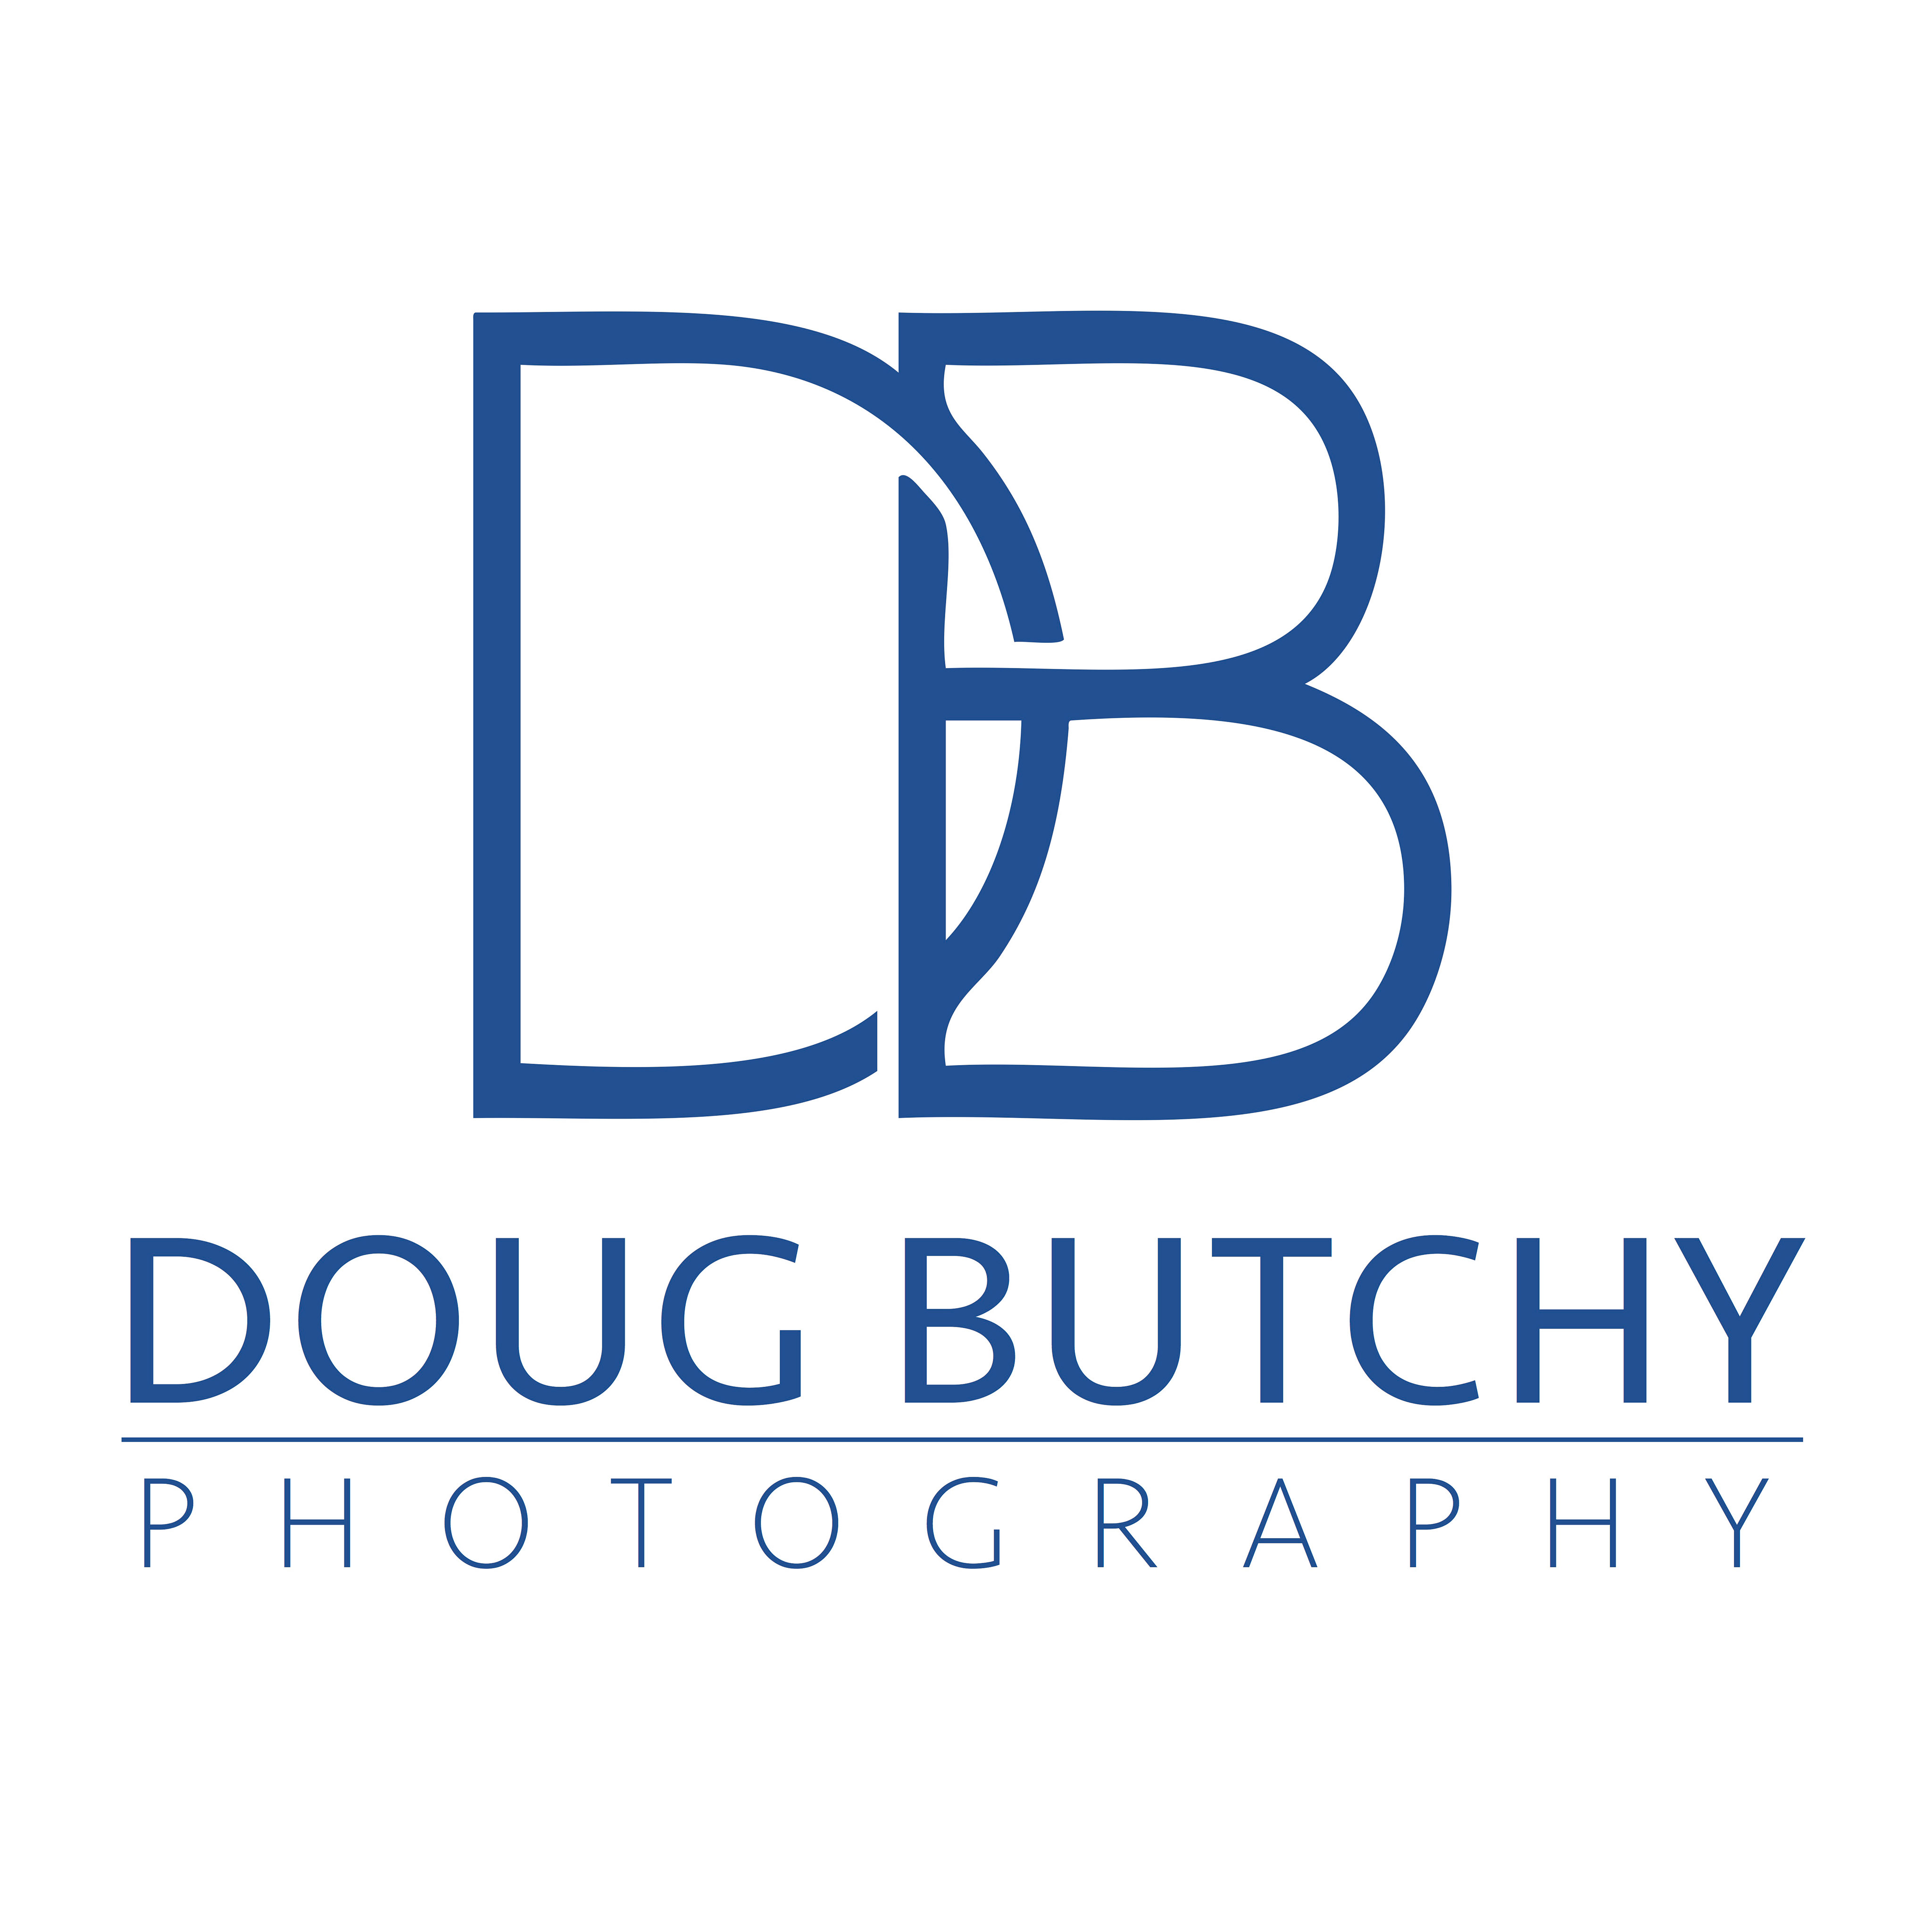 Doug Butchy Photography